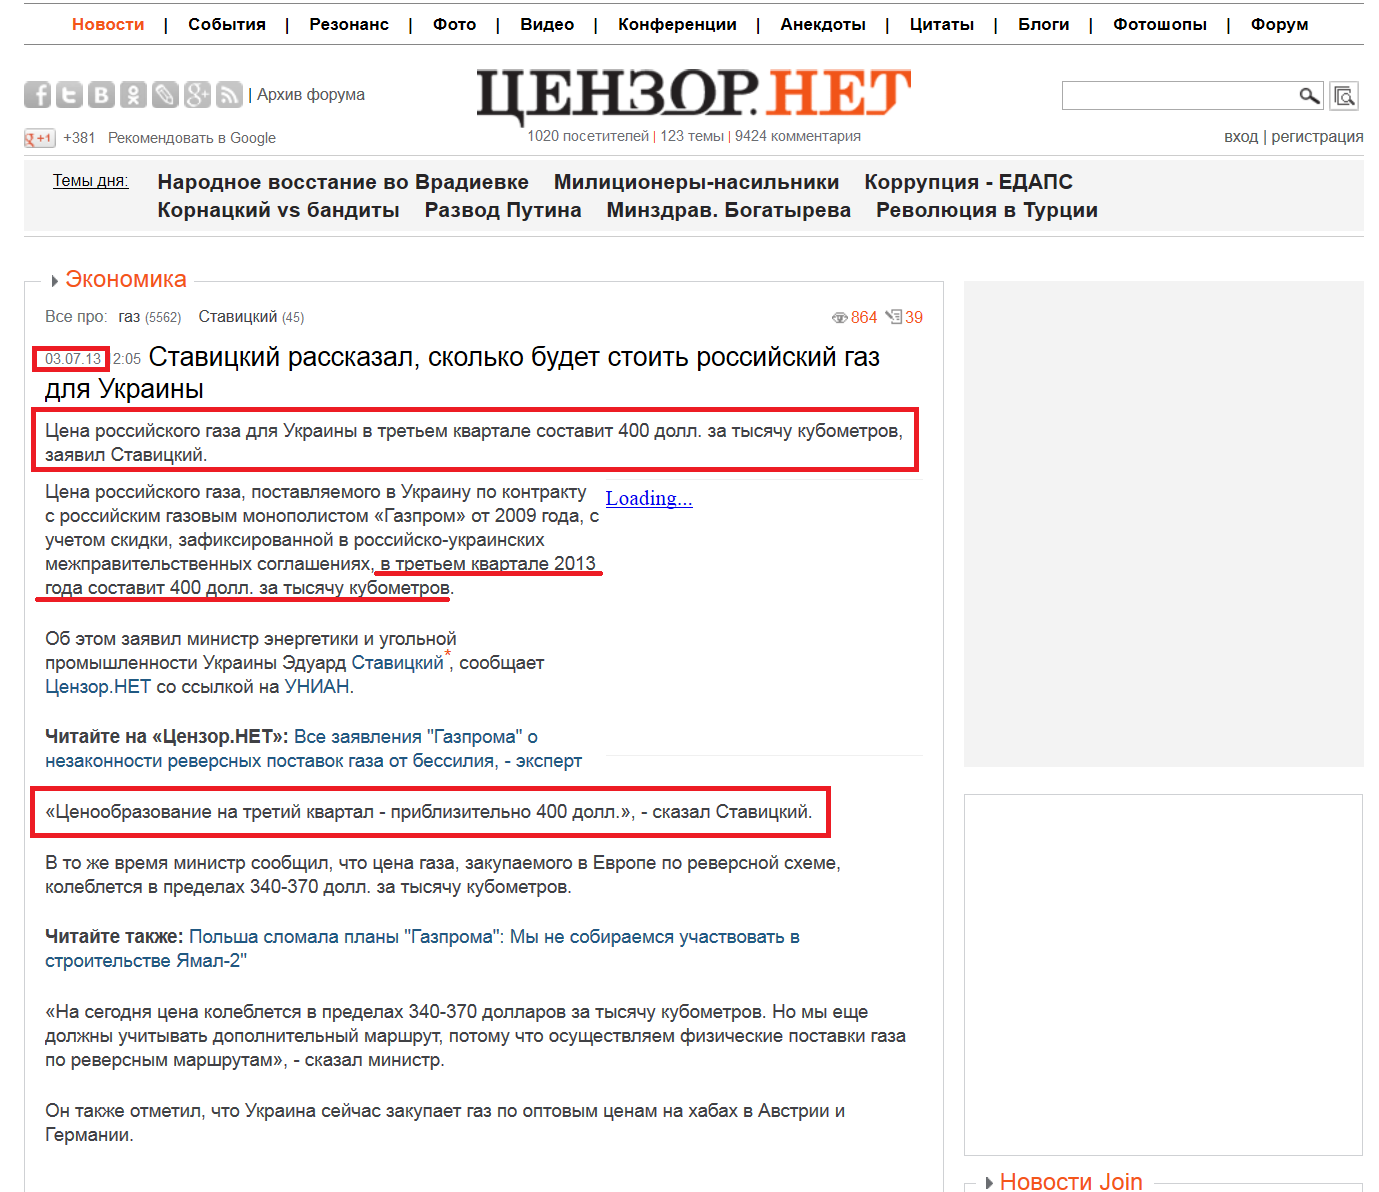 http://censor.net.ua/news/246242/stavitskiyi_rasskazal_skolko_budet_stoit_rossiyiskiyi_gaz_dlya_ukrainy